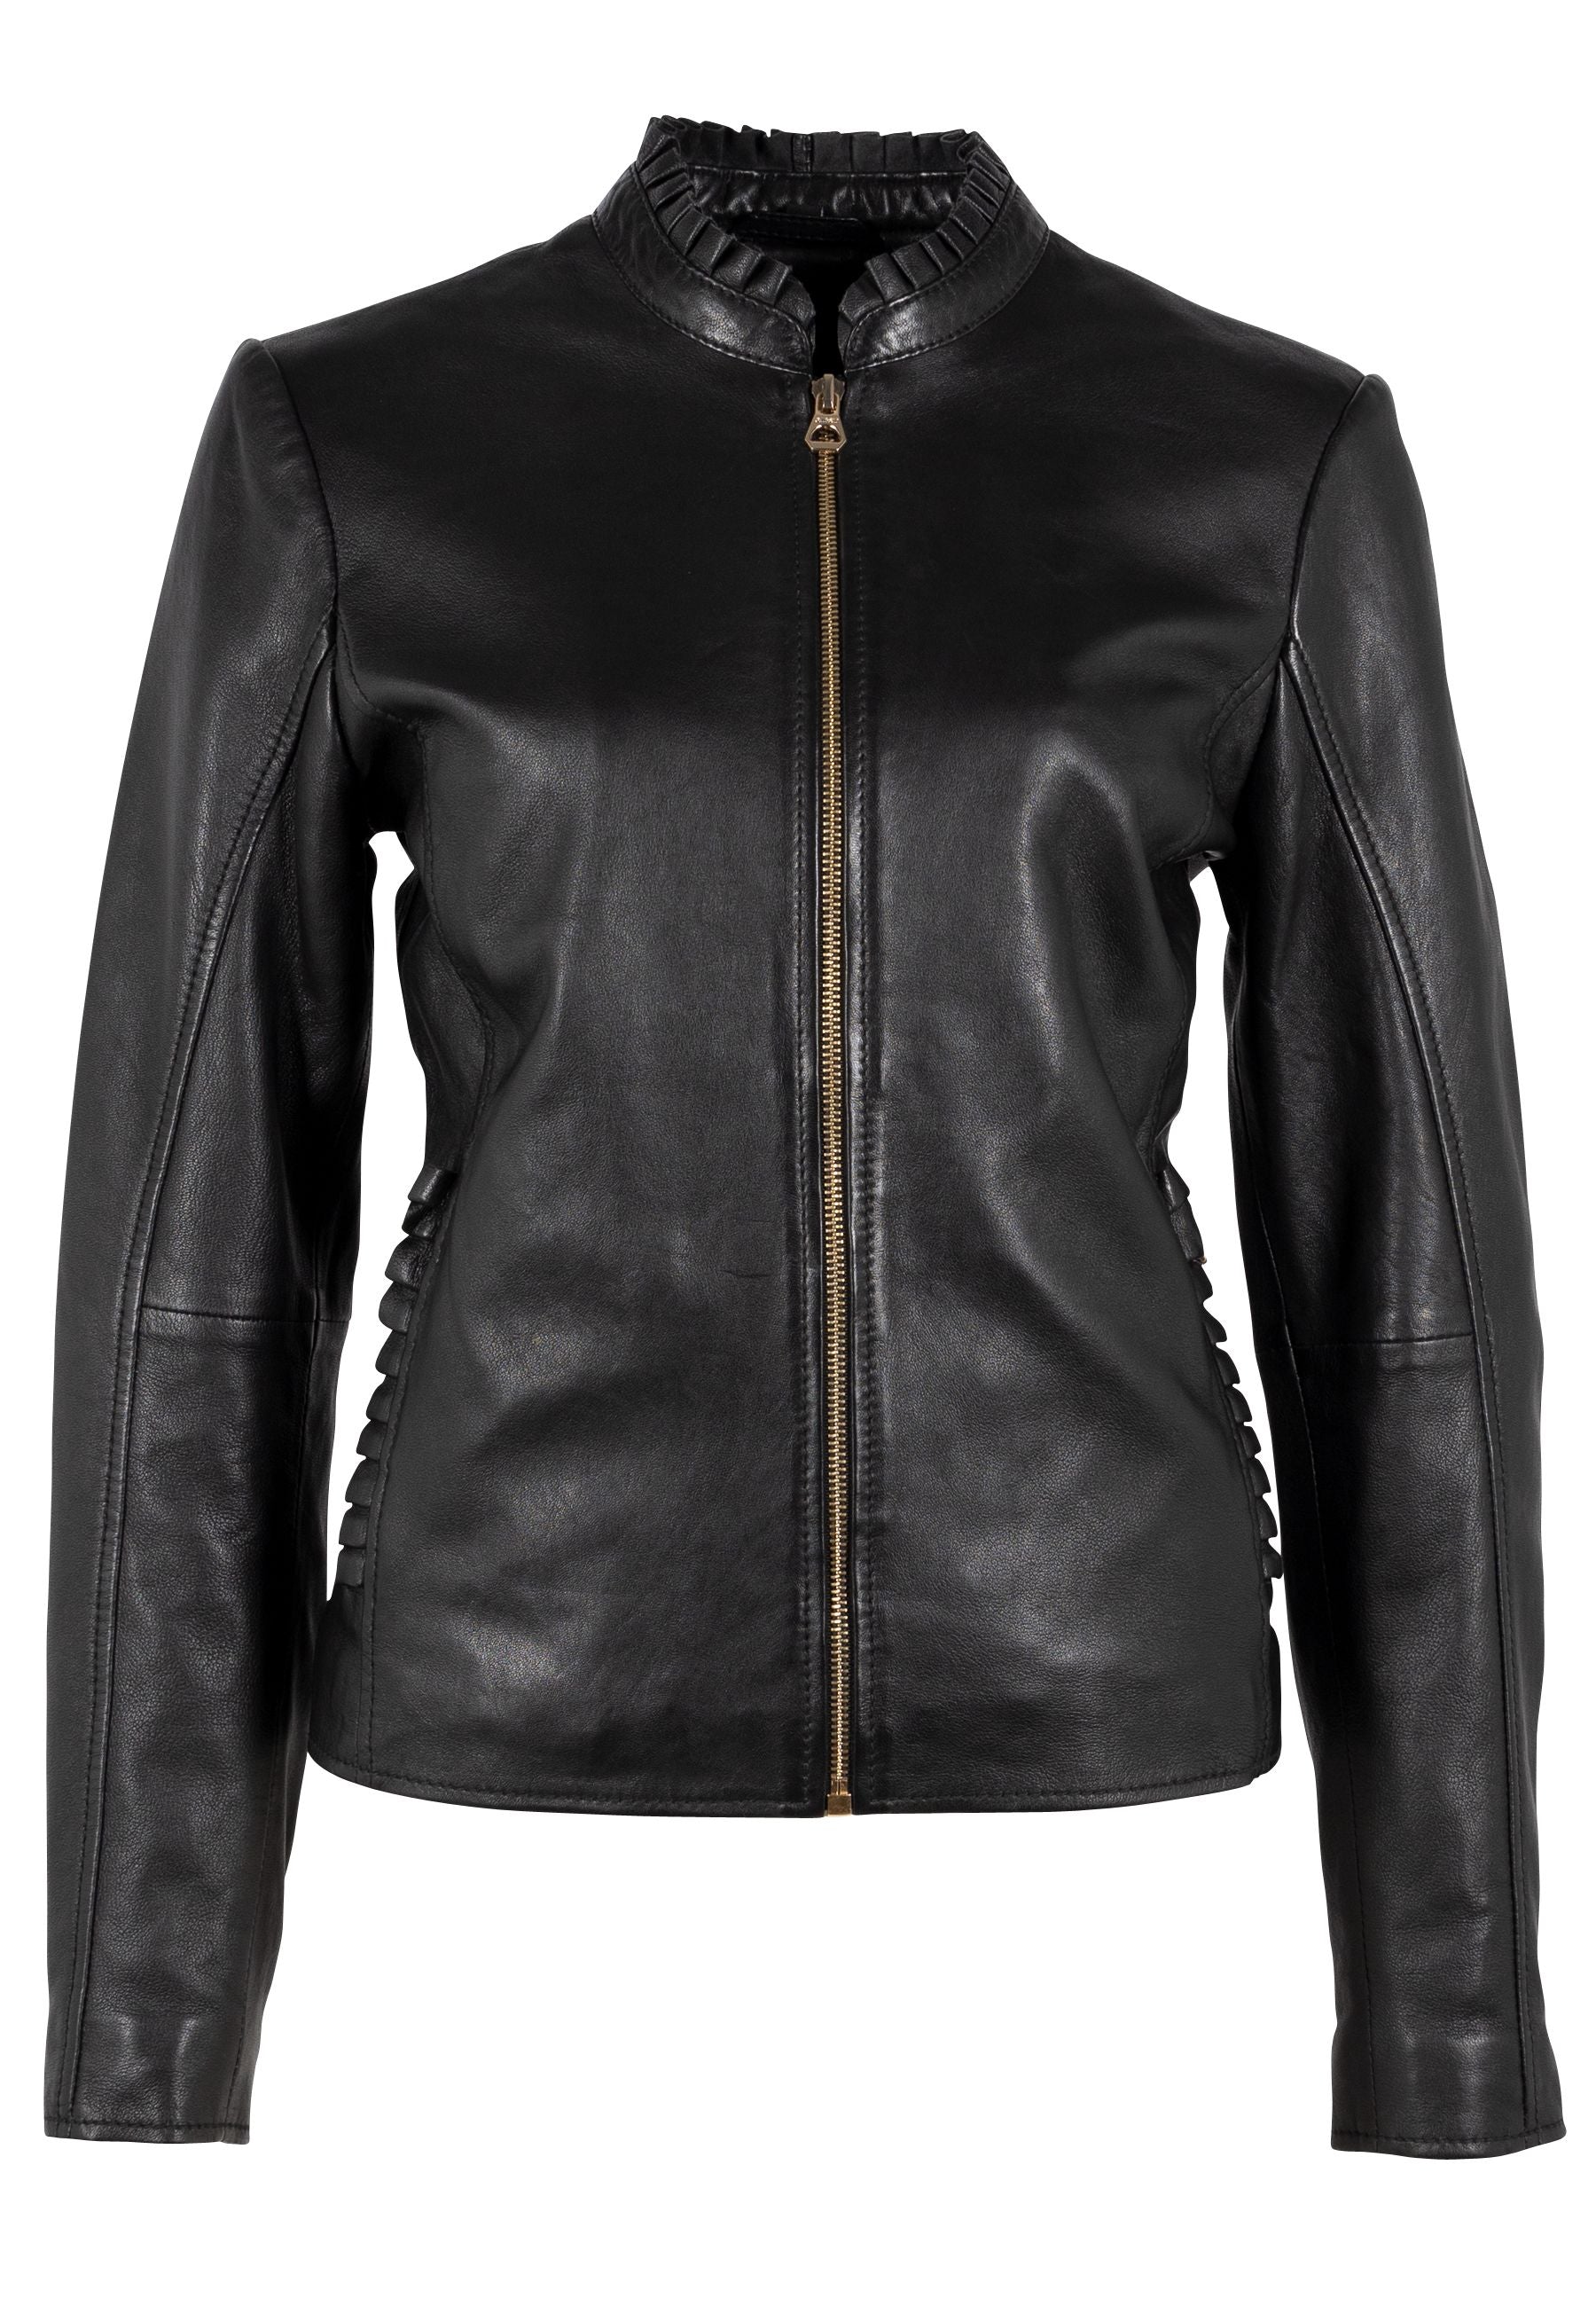 Mauritius Women's Galina Leather Jacket, Black